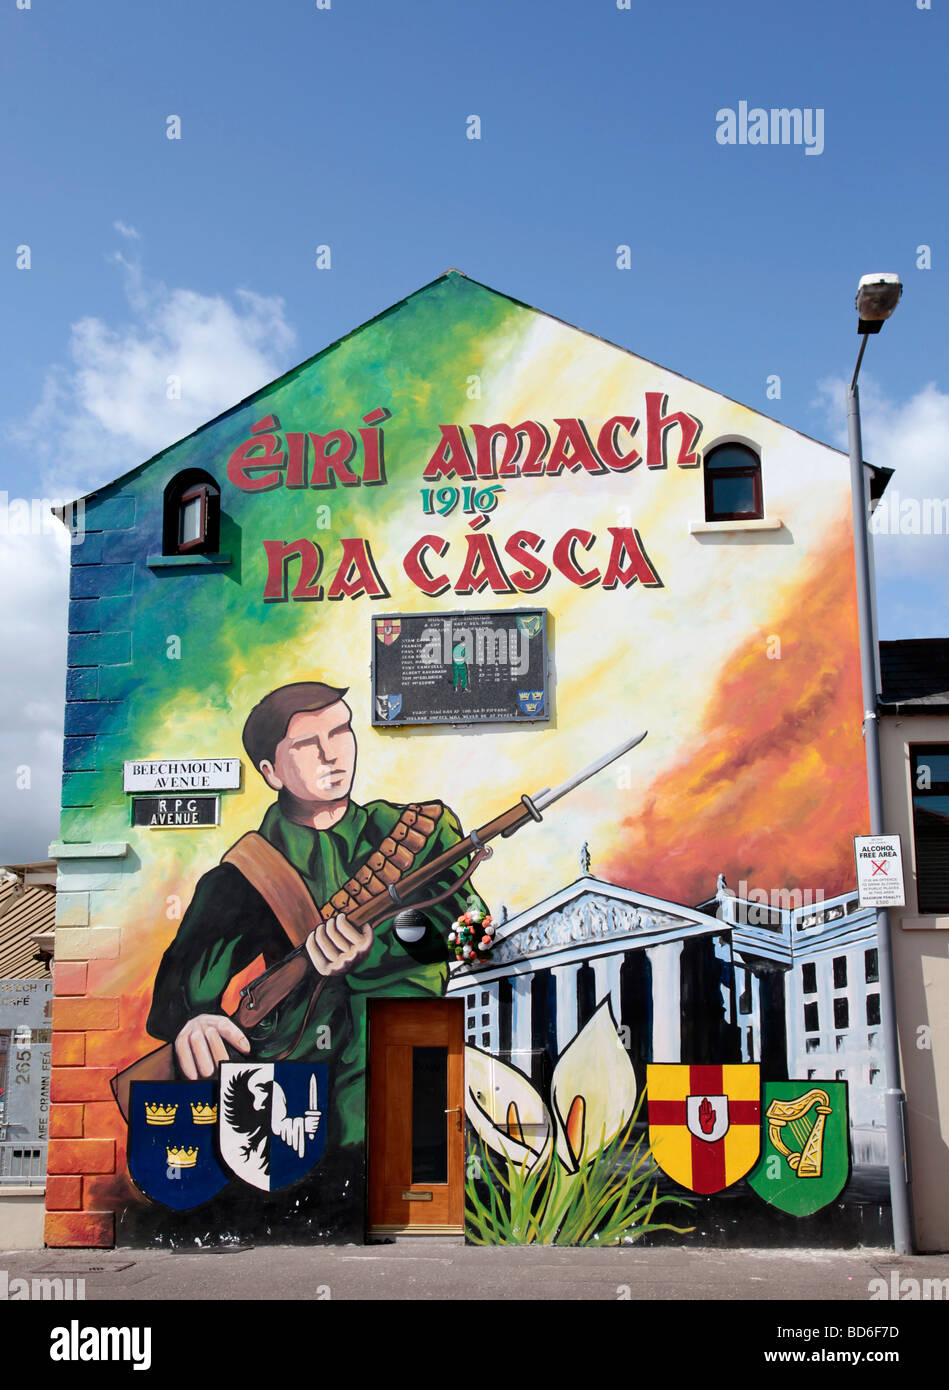 Murale nel Falls Road area della parte occidentale di Belfast, commemmorating la sollevazione di Pasqua del 1916 - Eiri amach na casca in gaelico. Foto Stock